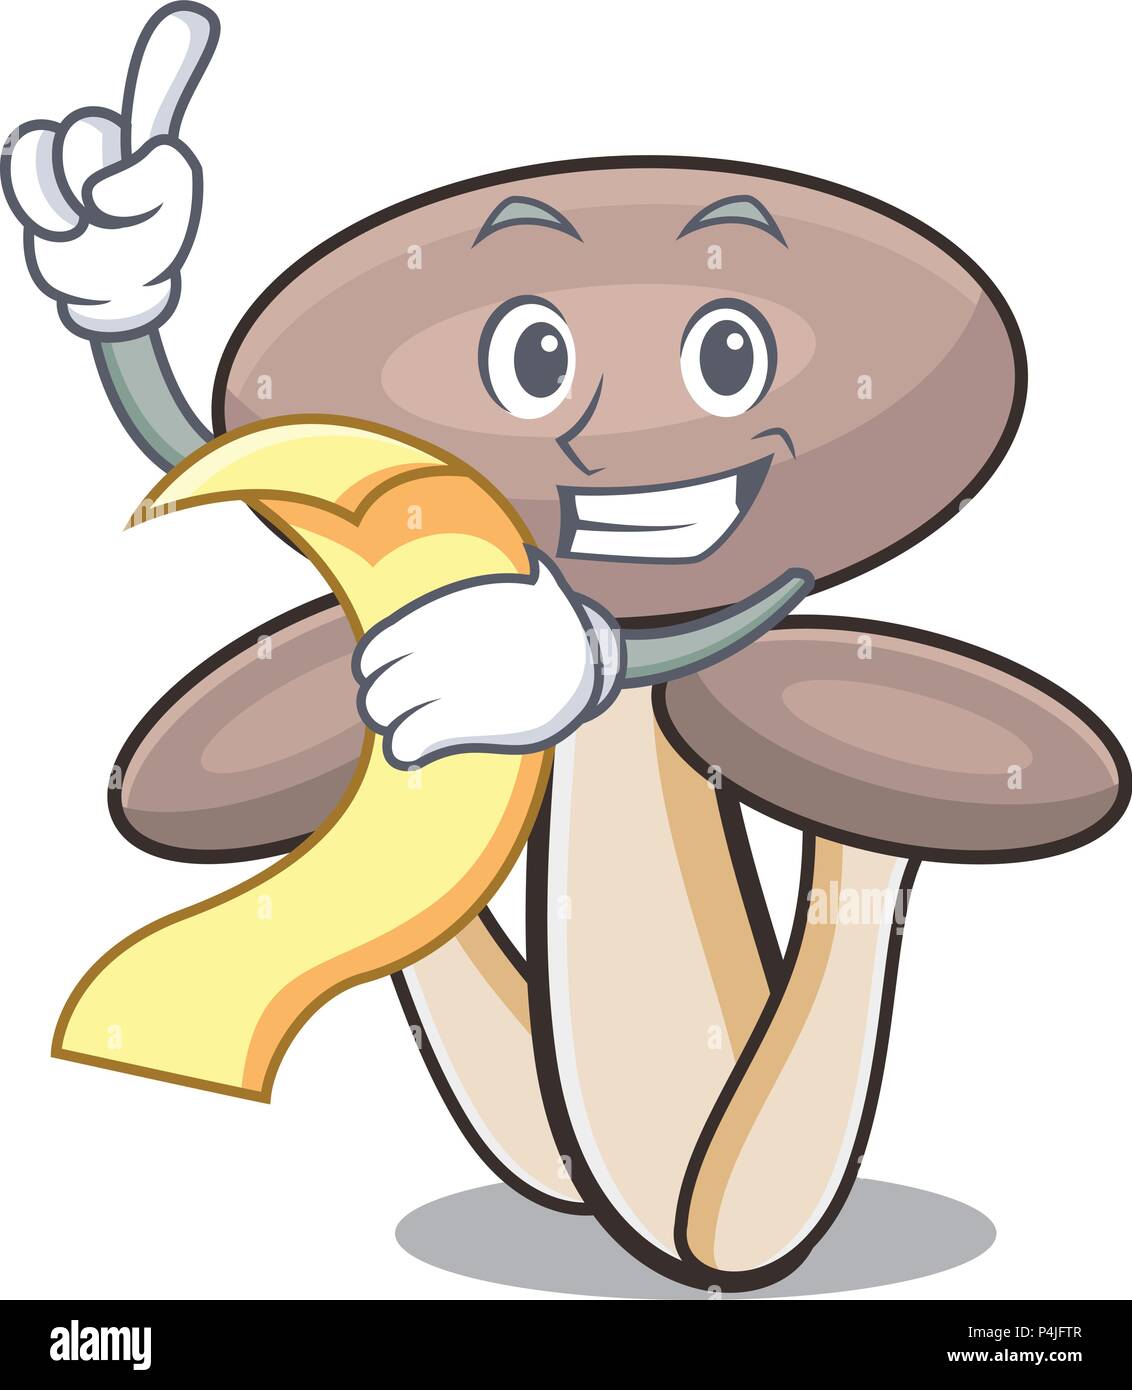 With menu honey agaric mushroom mascot cartoon Stock Vector